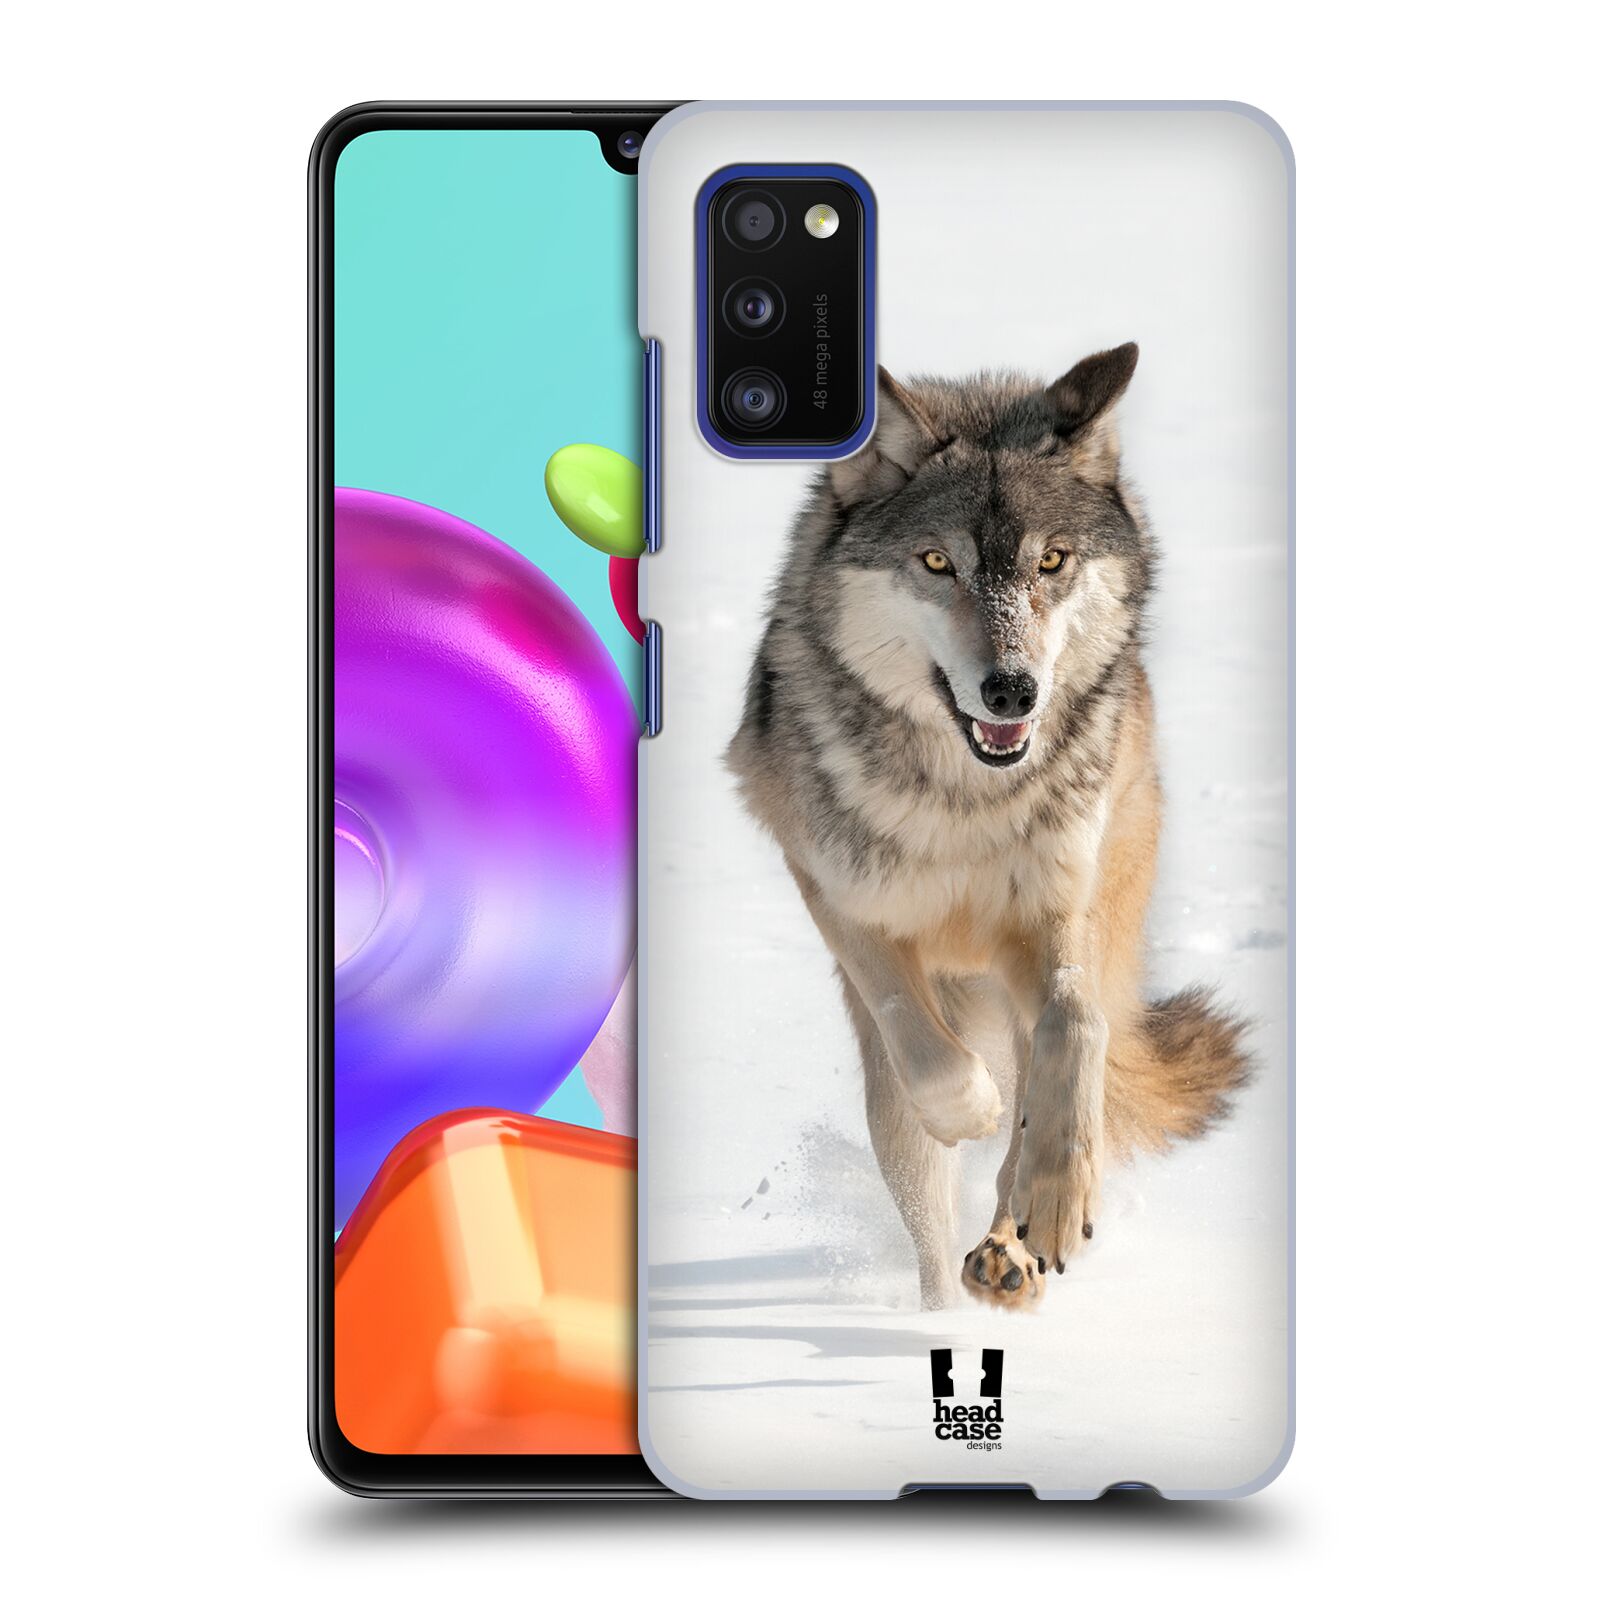 Zadní obal pro mobil Samsung Galaxy A41 - HEAD CASE - Svět zvířat divoký vlk